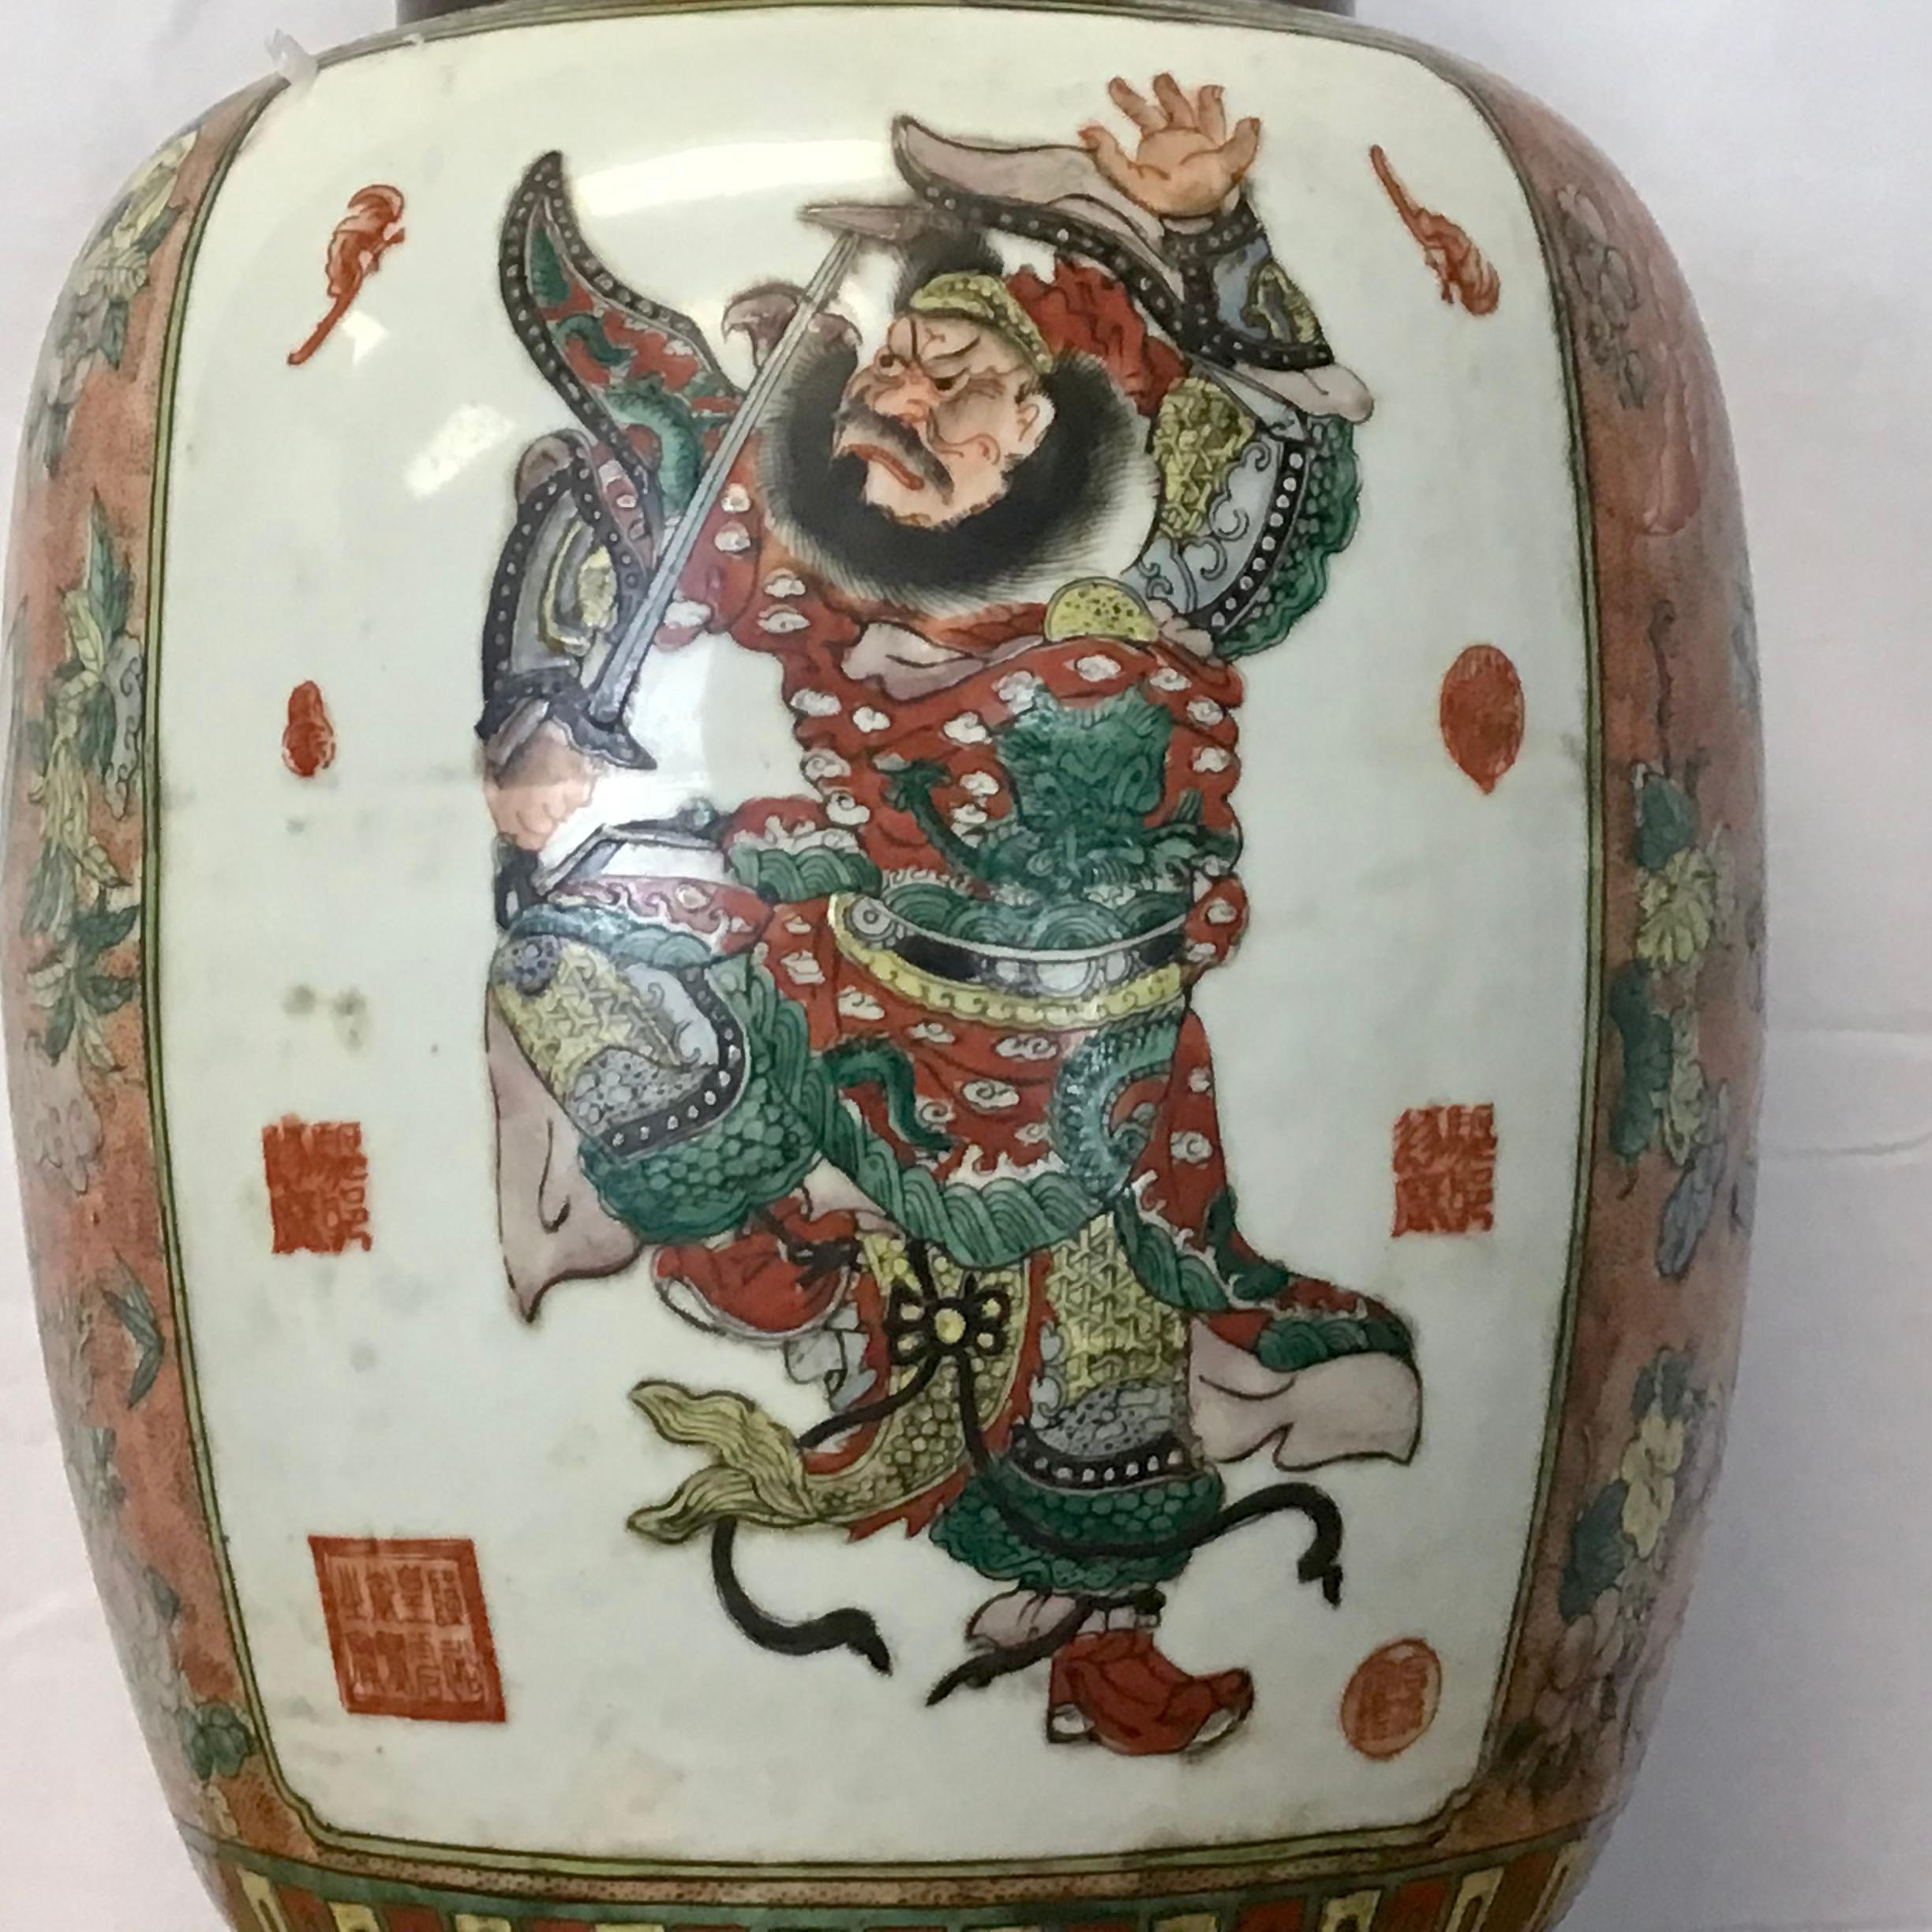 Il s'agit d'un vase en porcelaine chinoise assez étonnant, fabriqué pour être exporté en Occident au début du XXe siècle. Le vase a été monté sur une lourde base en laiton.
La porcelaine est peinte d'une scène de gardiens très vivante sur les faces